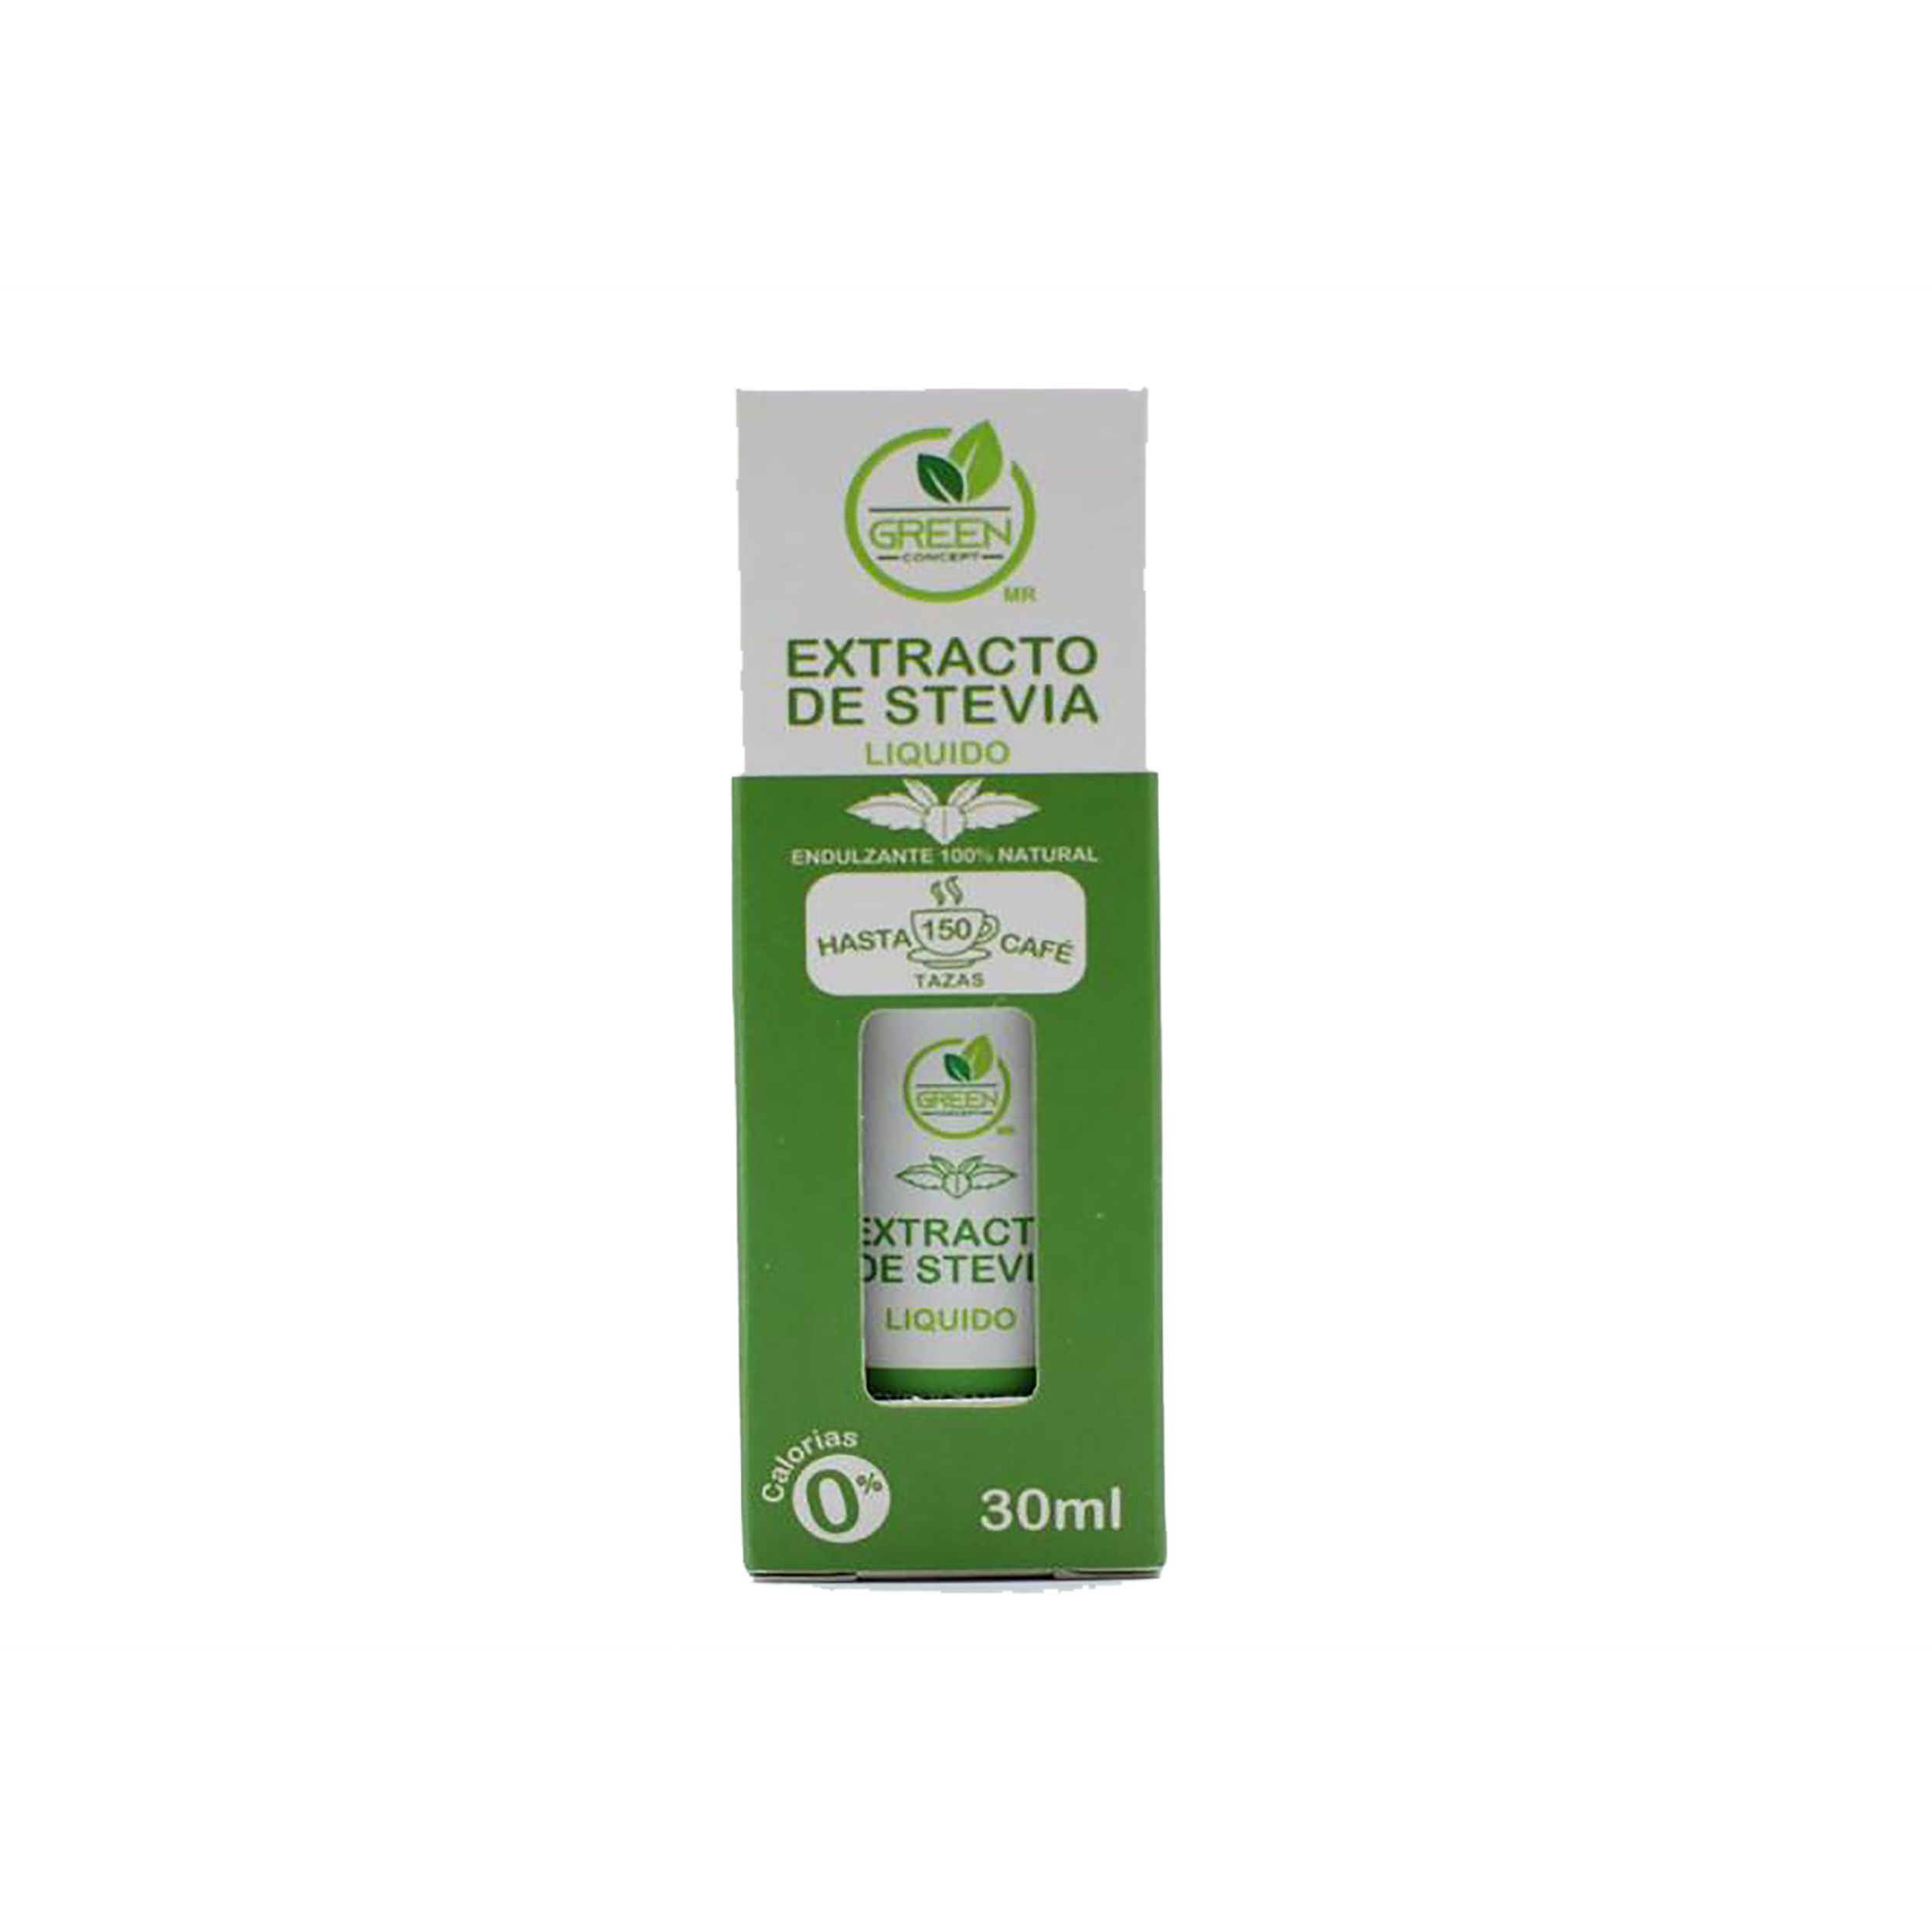 Green concept -Extracto de stevia gotero